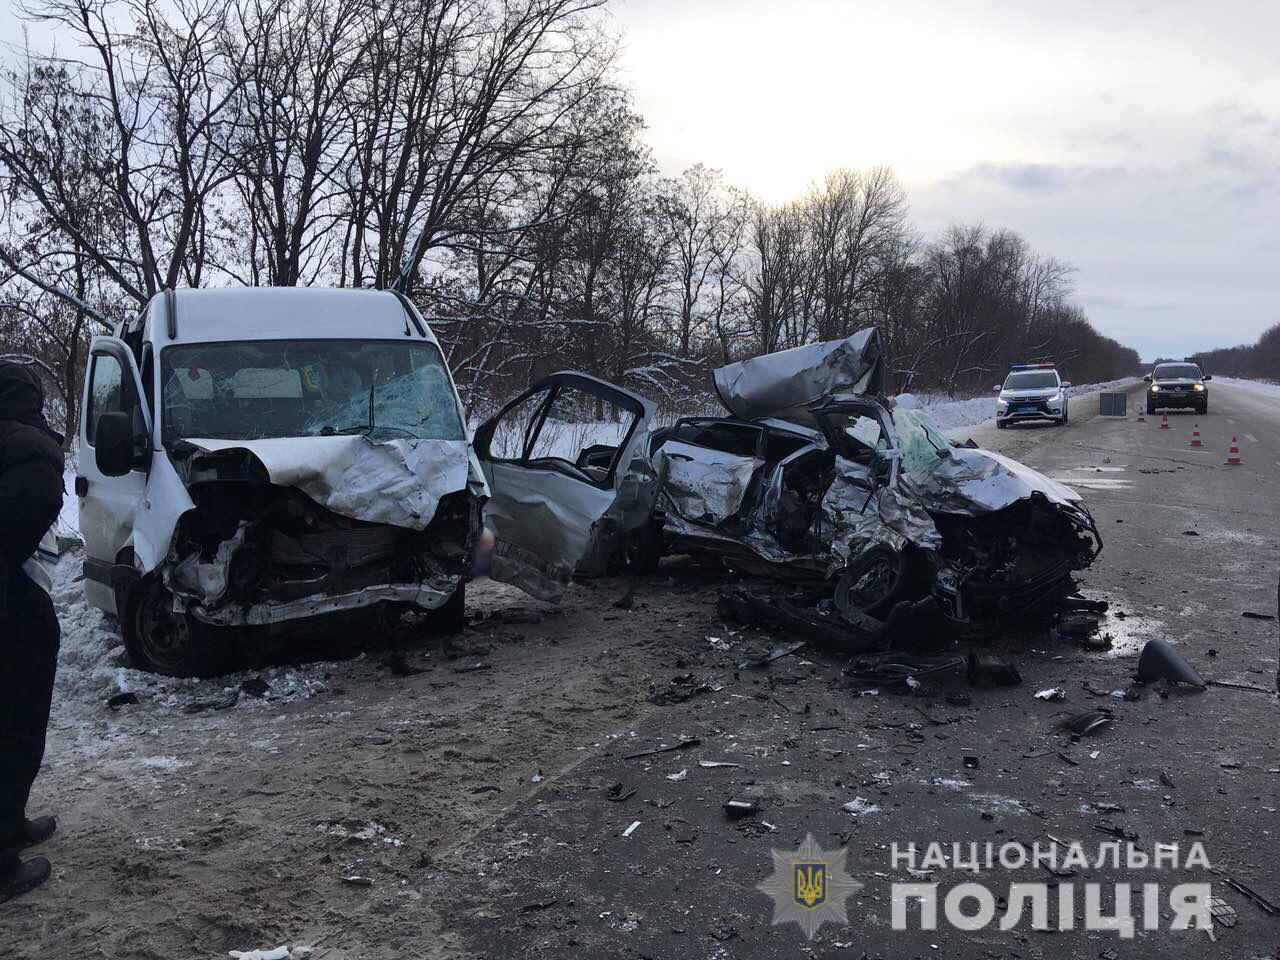 Жертвами аварии в Харьковской области стали четверо человек. Фото: Нацполиция